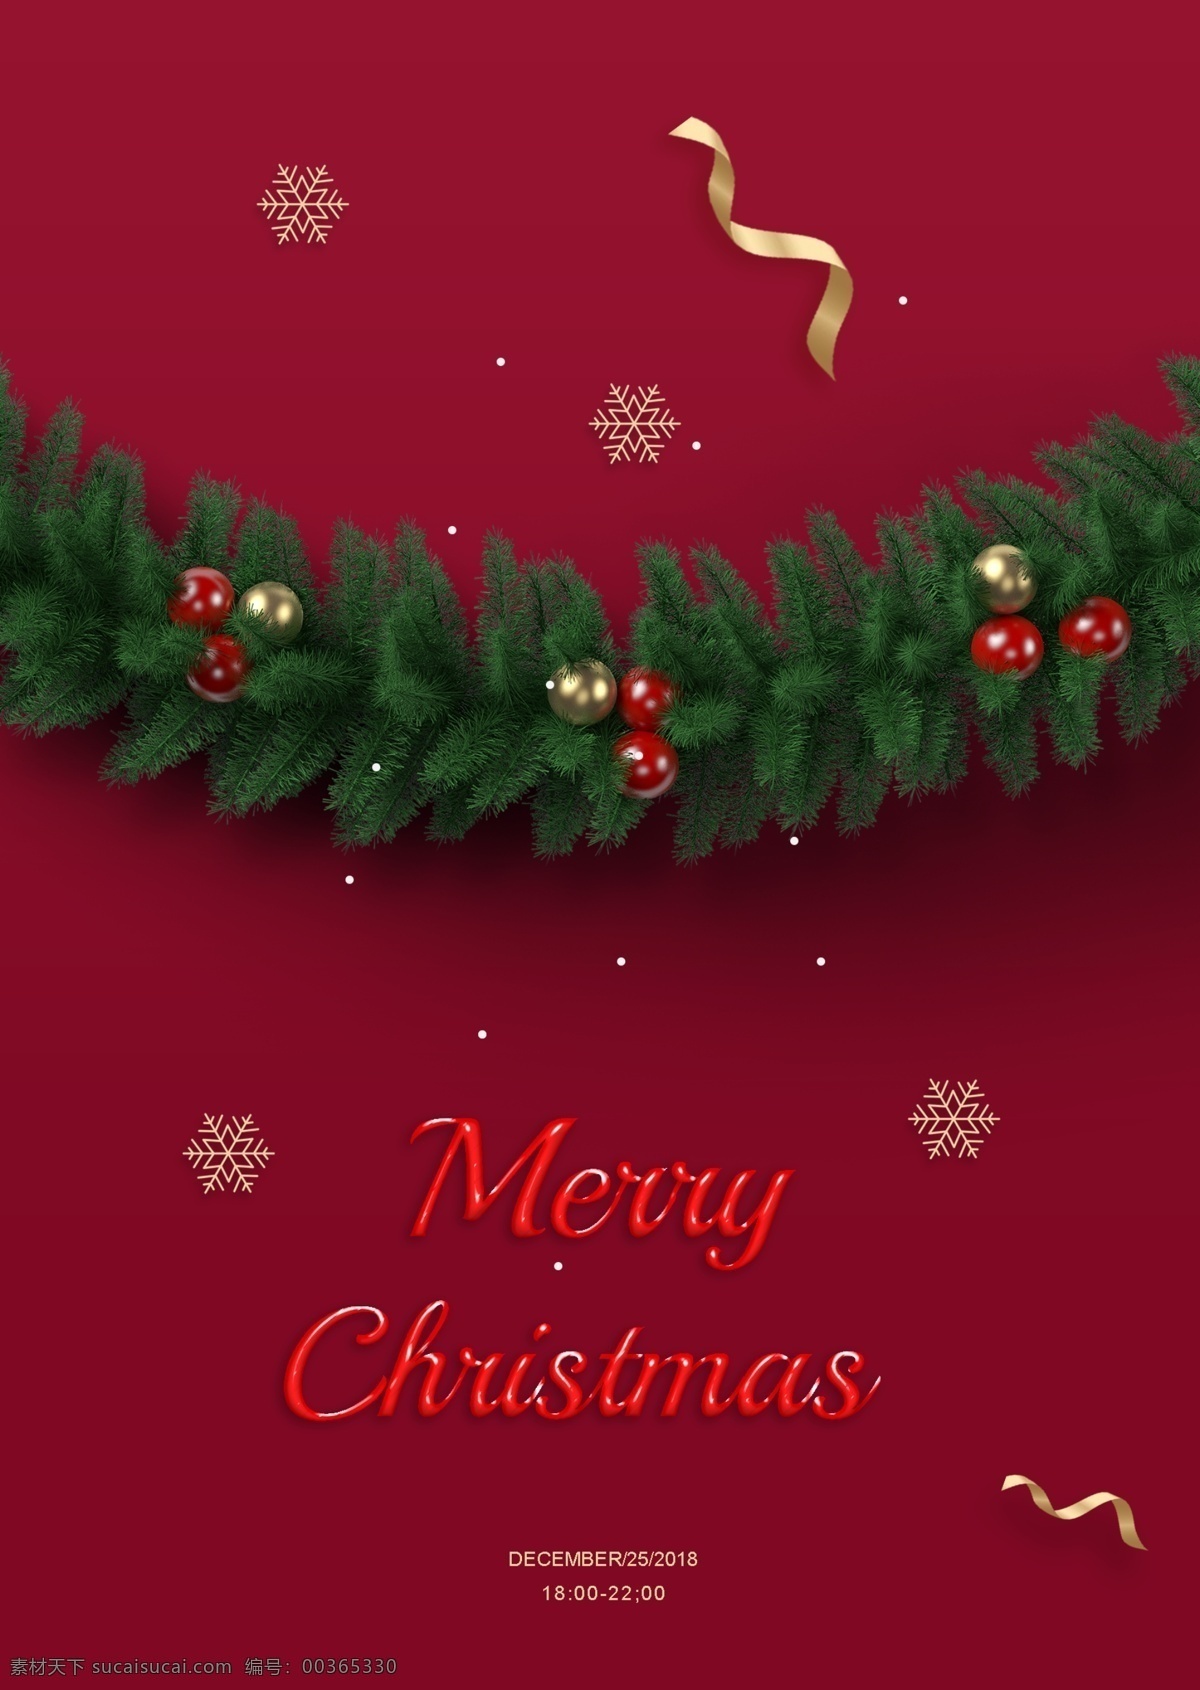 这位 作家 2019 年 红色 圣诞 高级 海报 雪 钟 纸 韩国风格 绿色 圣诞树 装饰品 在圣诞节 韩国 圣诞节 金色丝绸 节日派对 圣诞晚会 在平安夜 圣诞节邀请 节日促销 品牌宣传